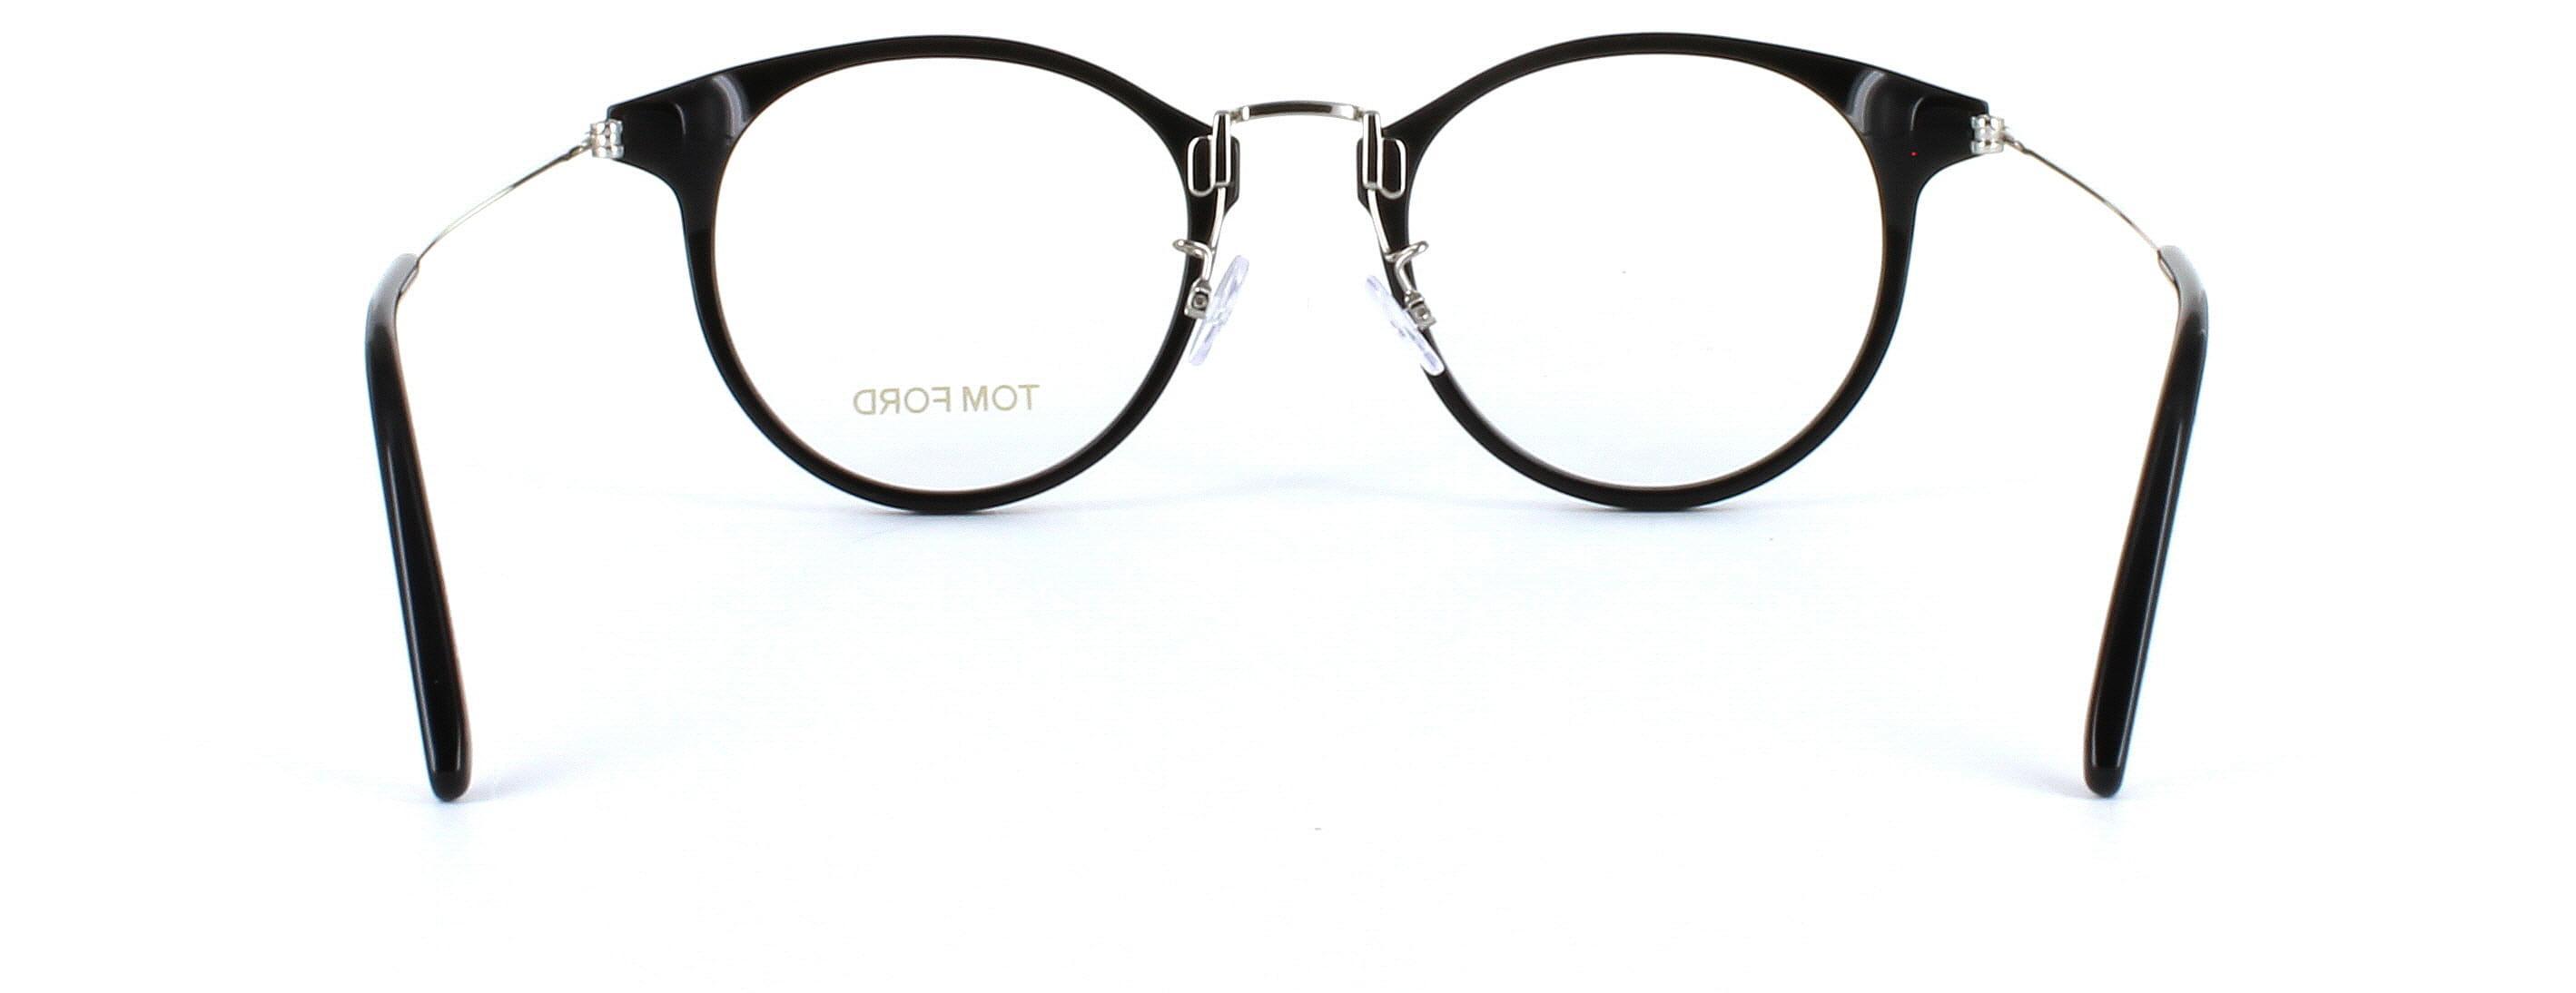 Tom Ford Glasses - FT5563 - Black - Image 3